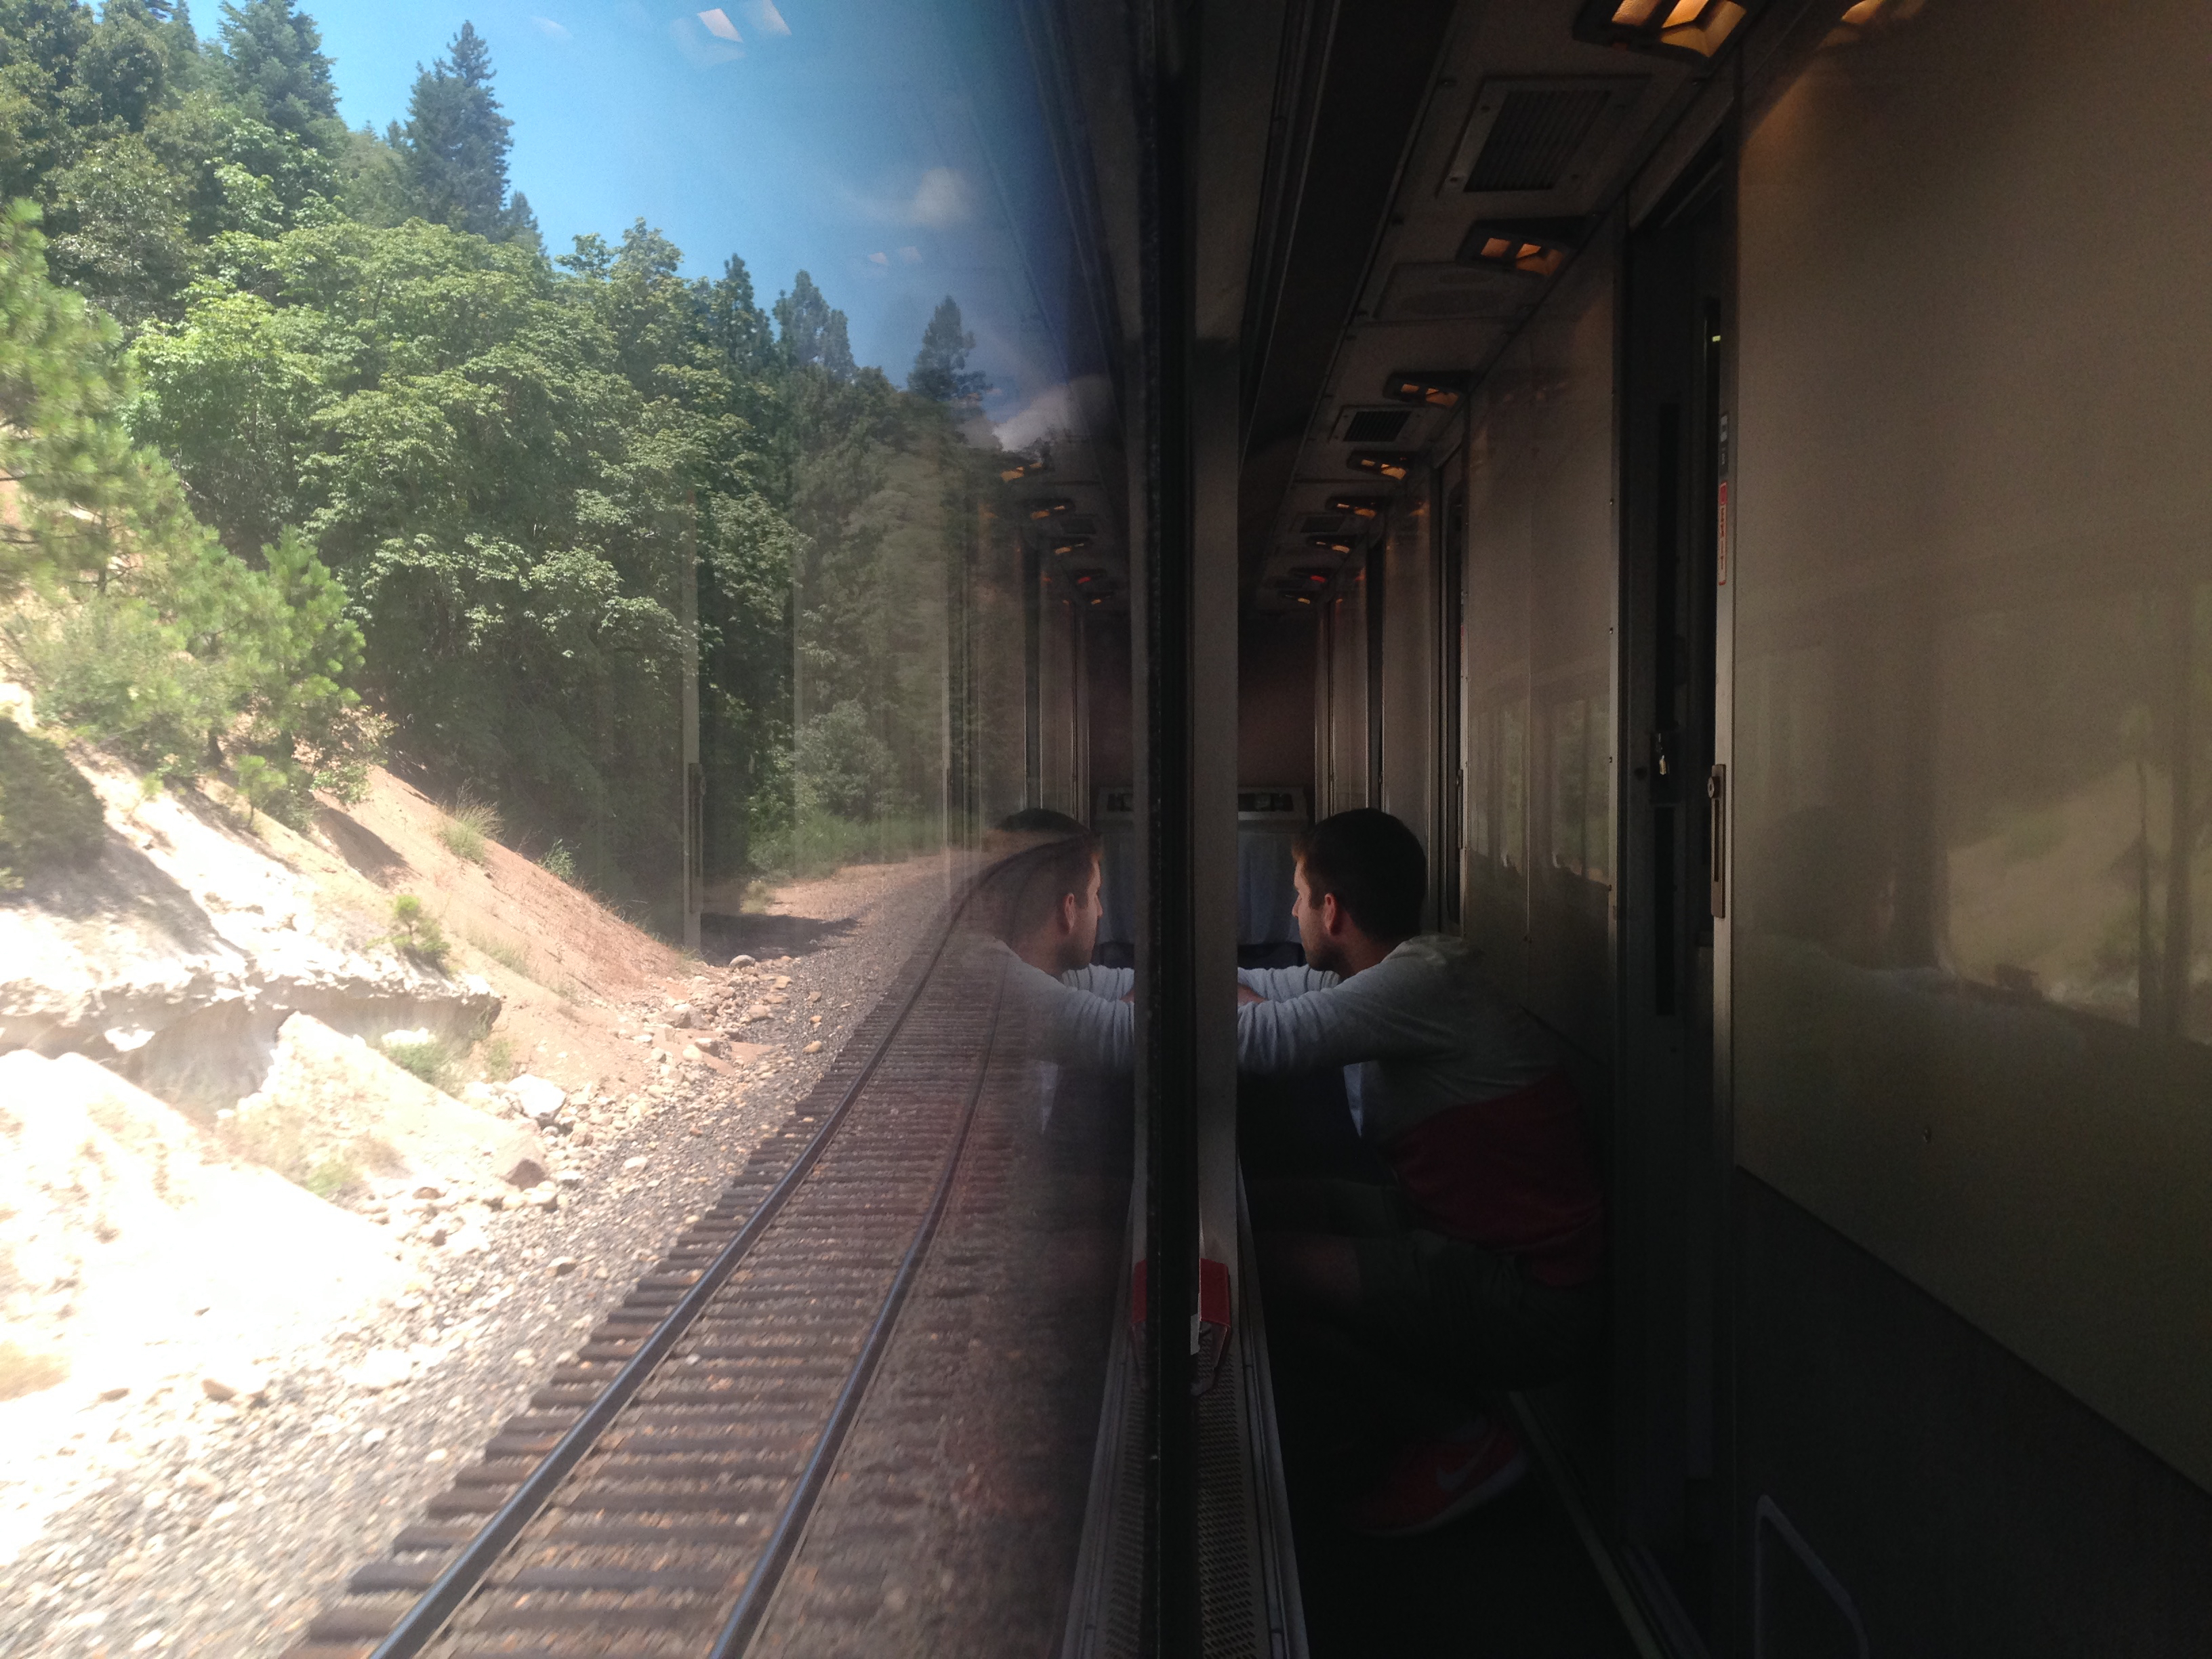 Summer #AmtrakViews from IG